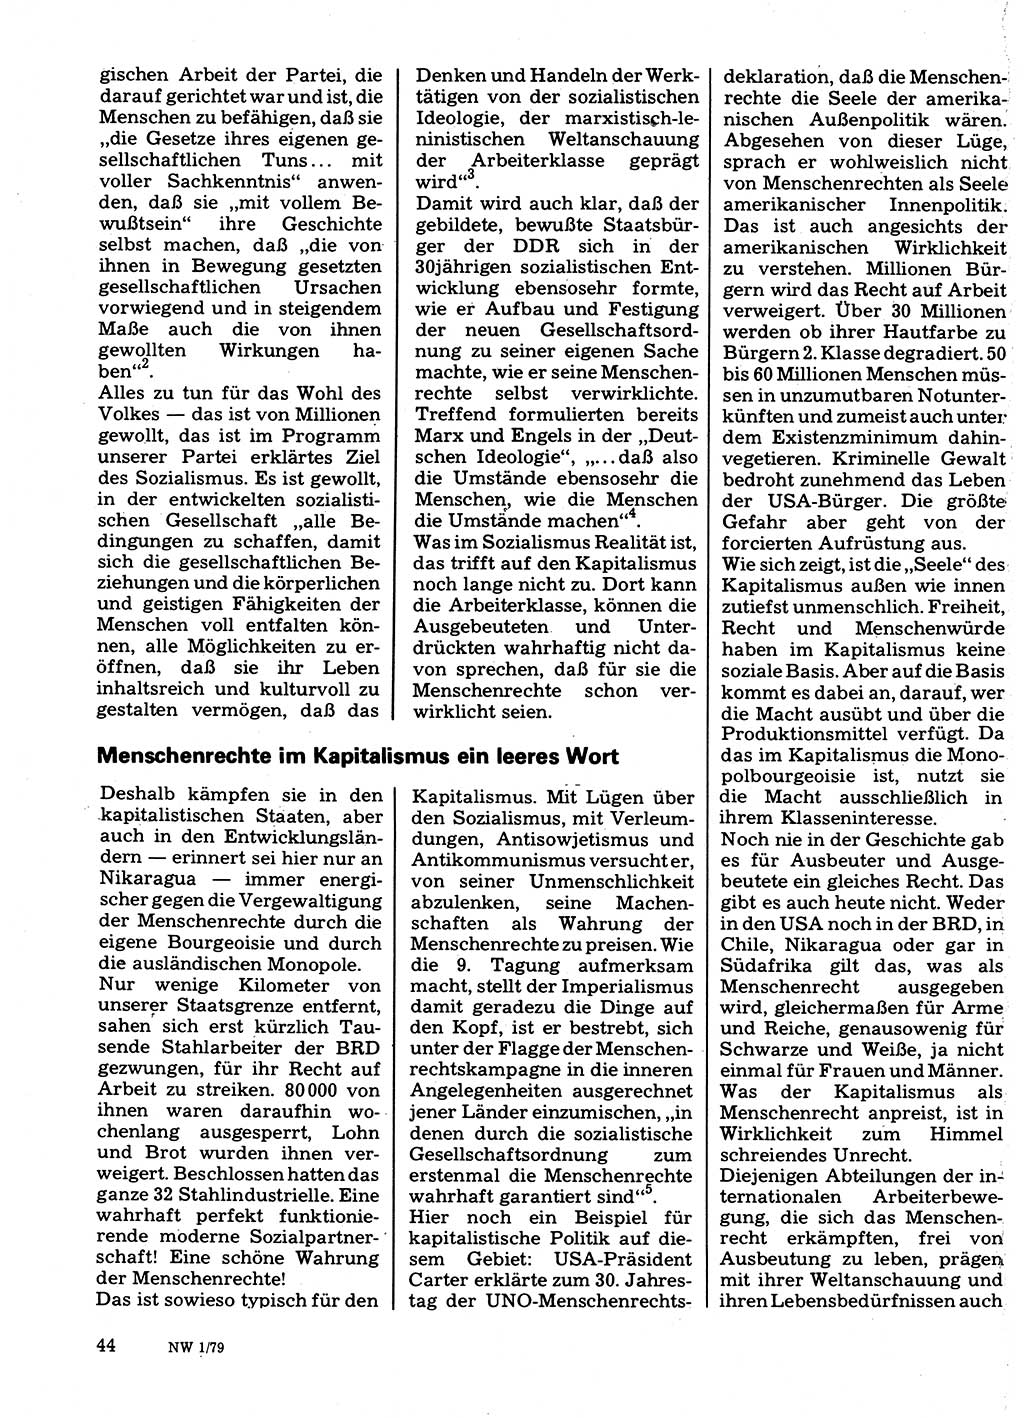 Neuer Weg (NW), Organ des Zentralkomitees (ZK) der SED (Sozialistische Einheitspartei Deutschlands) für Fragen des Parteilebens, 34. Jahrgang [Deutsche Demokratische Republik (DDR)] 1979, Seite 44 (NW ZK SED DDR 1979, S. 44)